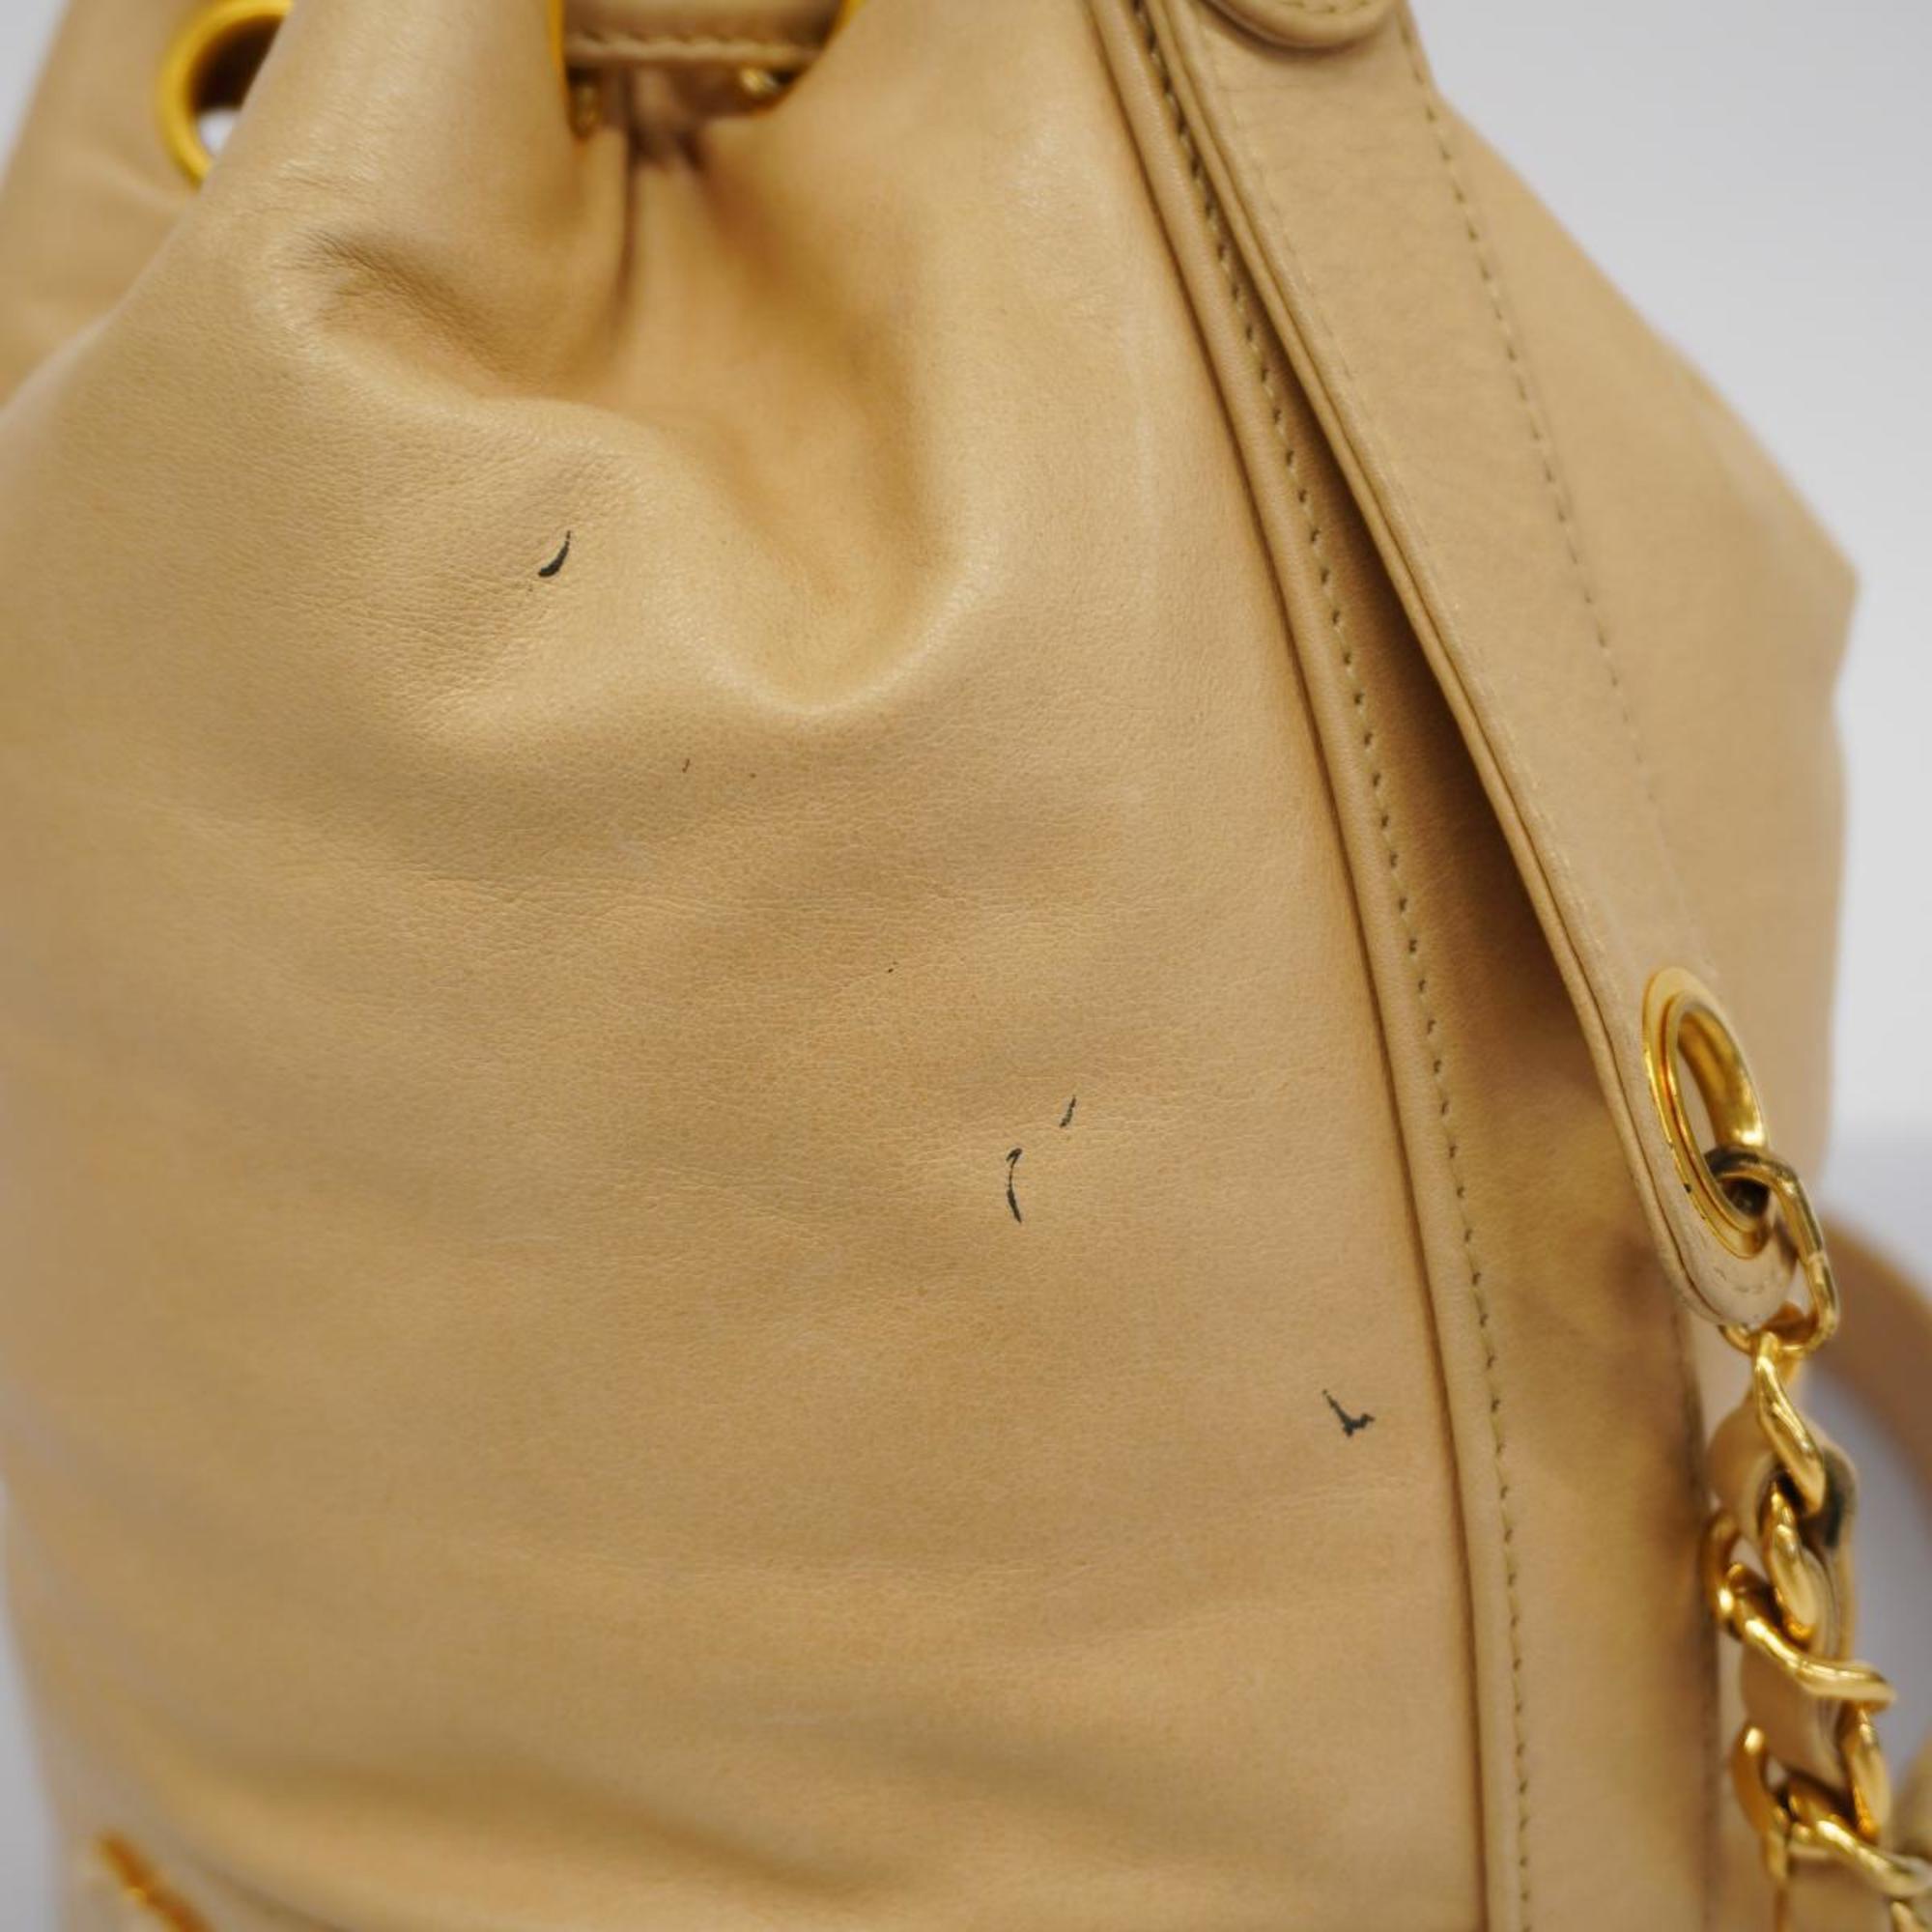 Chanel Shoulder Bag Triple Coco Chain Lambskin Light Beige Women's